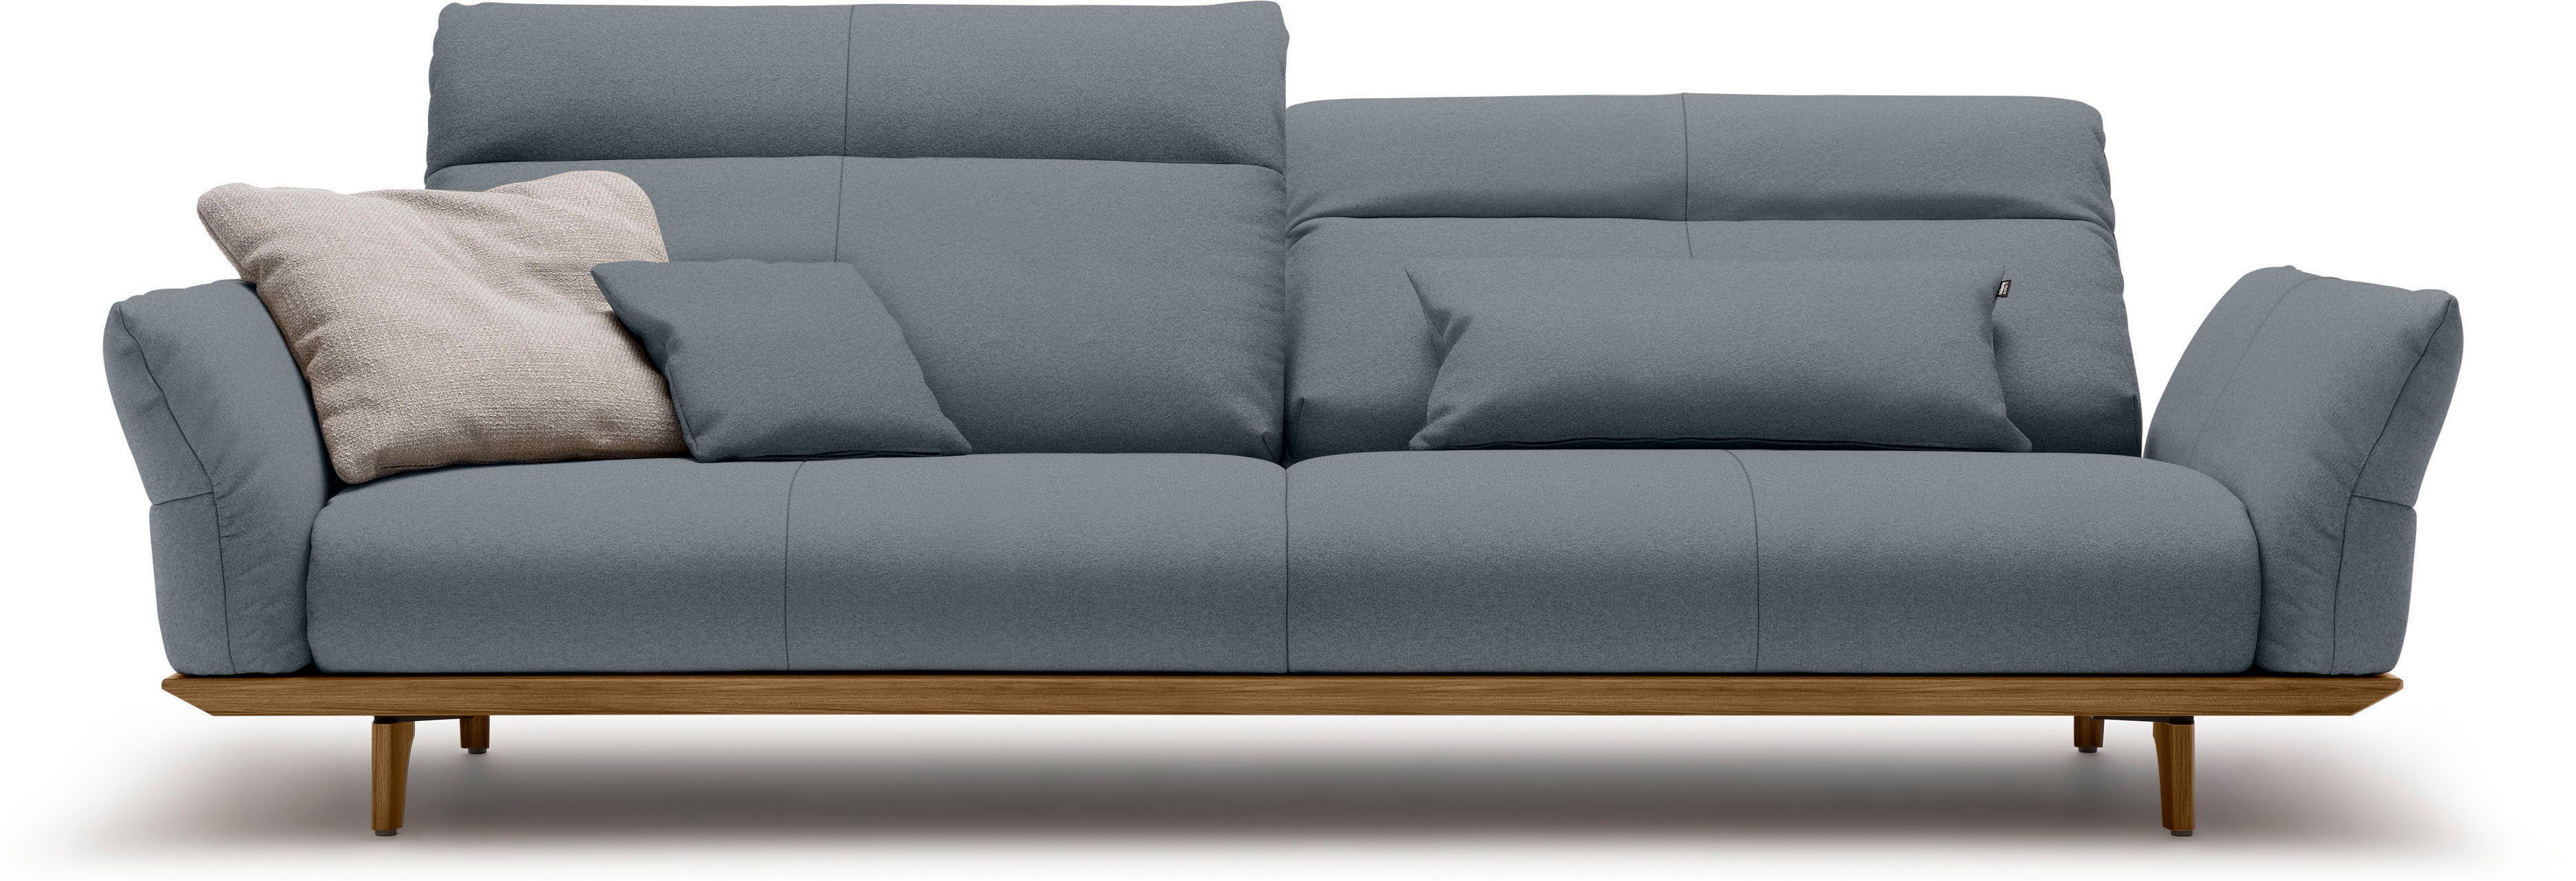 4-Sitzer sofa Breite 248 in Füße hs.460, hülsta Nussbaum, Sockel Nussbaum, cm